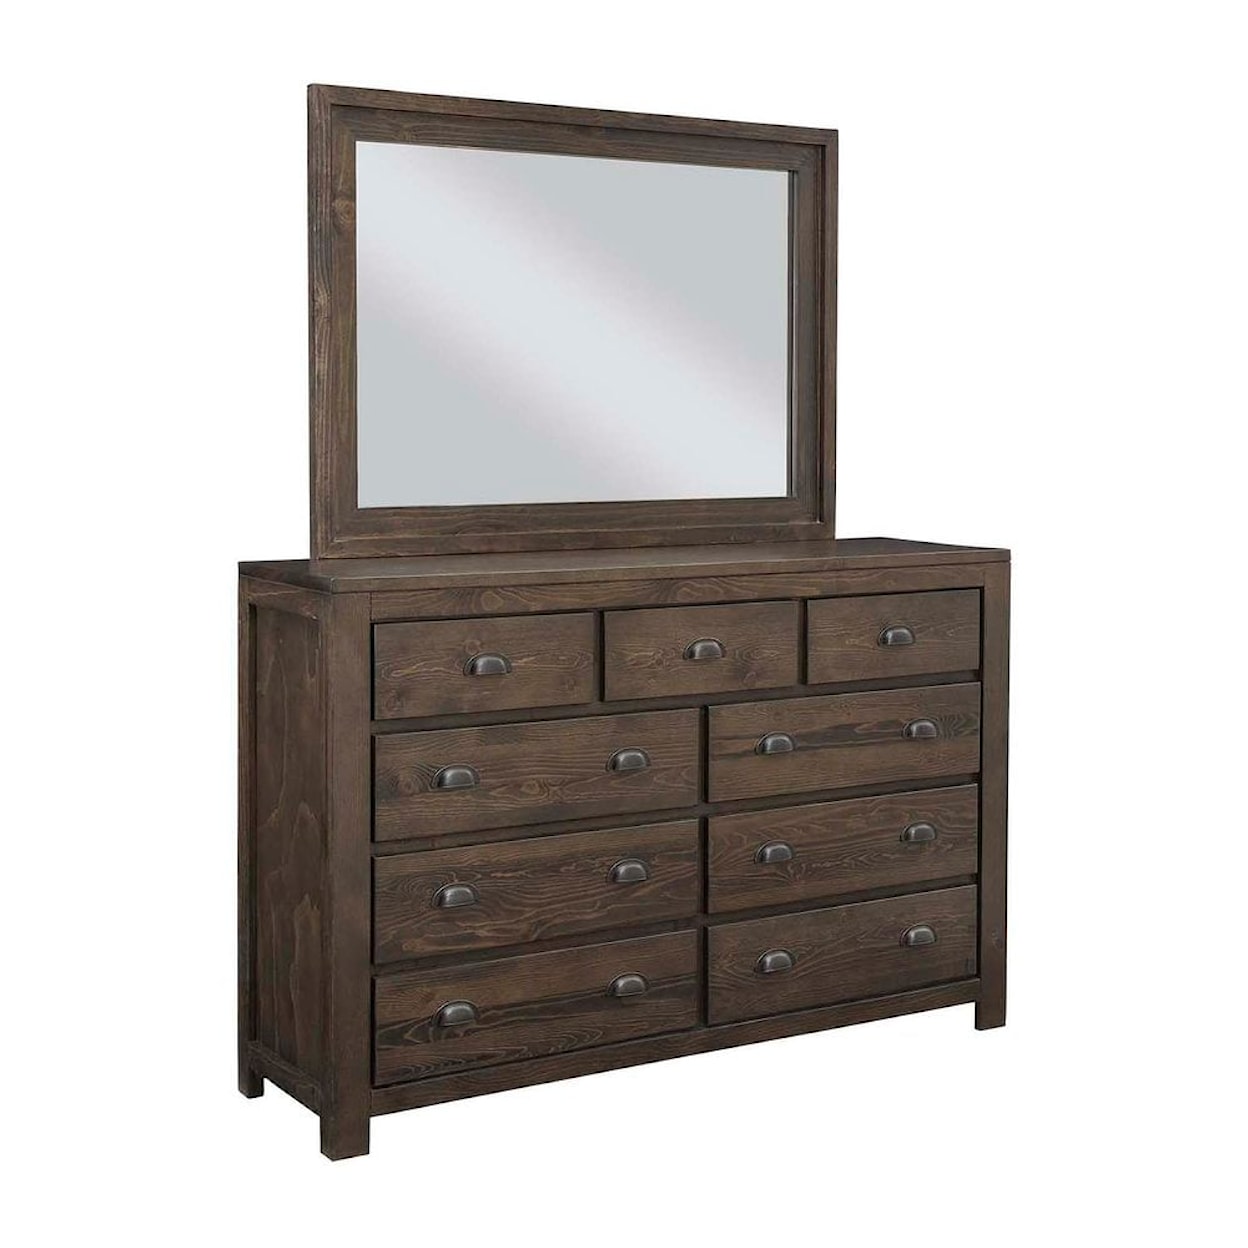 Progressive Furniture Falcon Bluff Dresser and Mirror